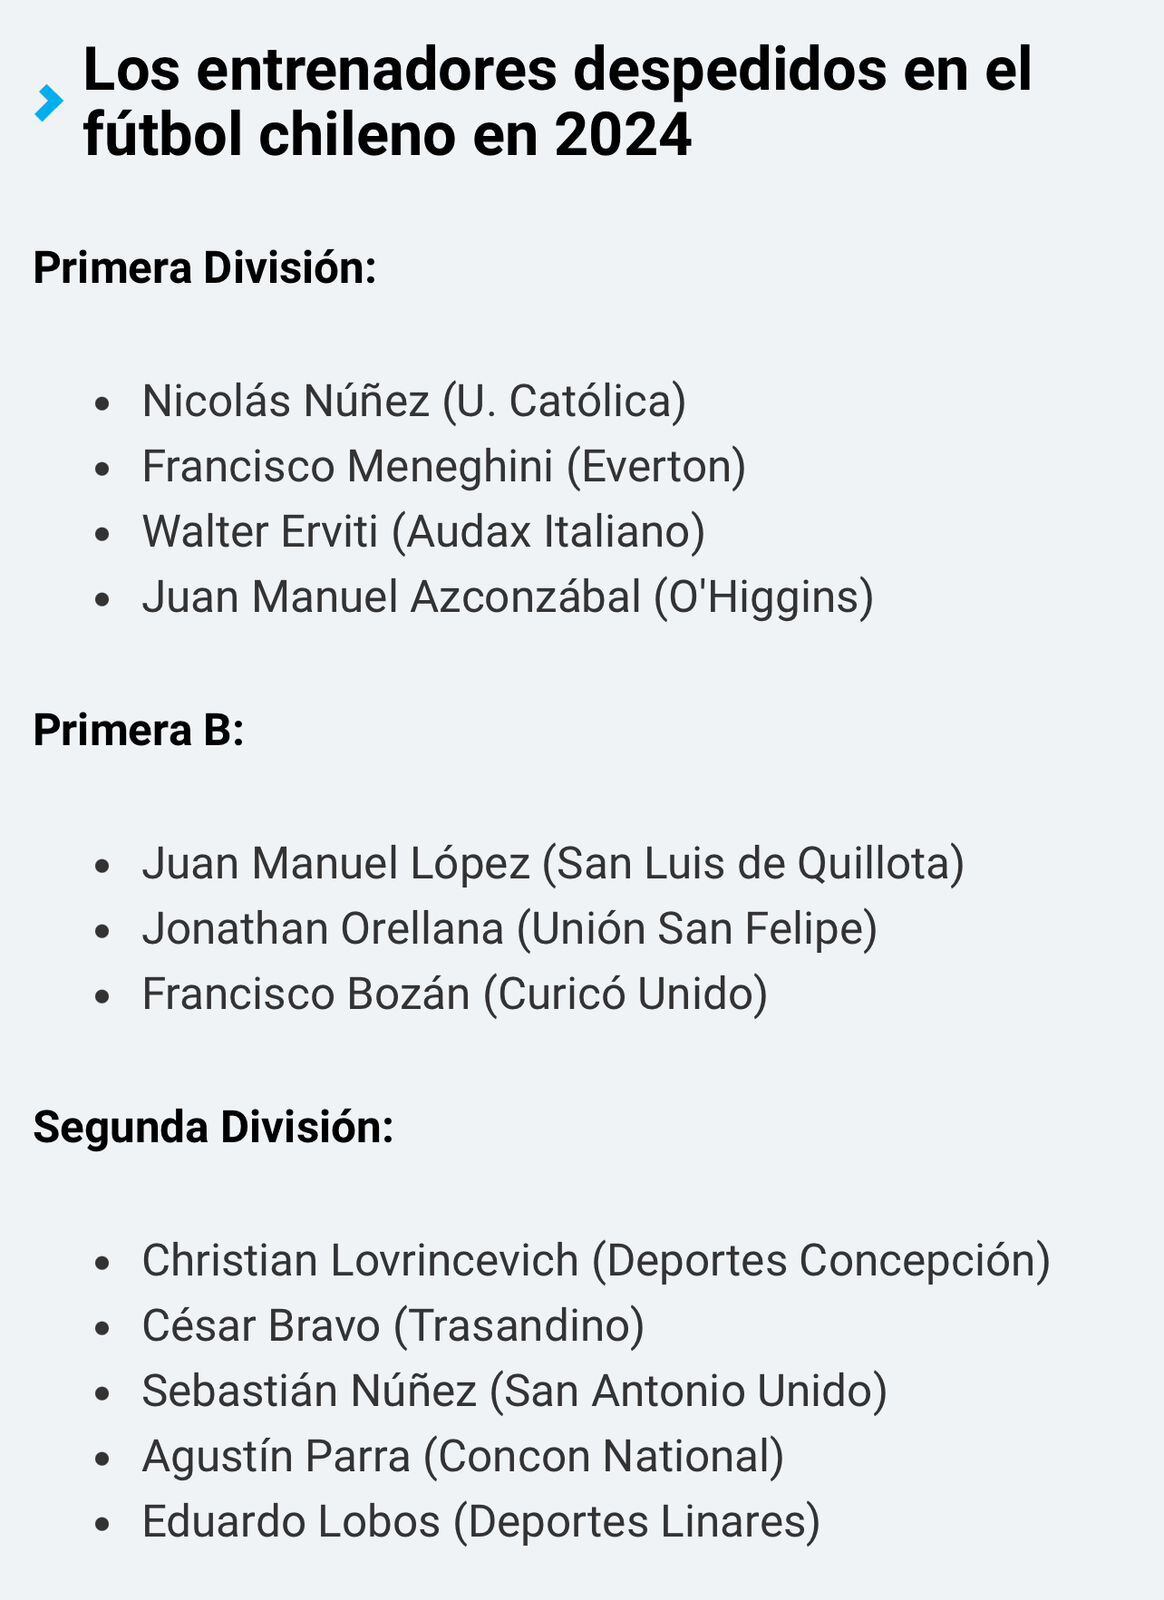 alarmante cifra: con el despido de emiliano astorga de cobreloa, ya son 13 los técnicos cesados este año en el fútbol chileno